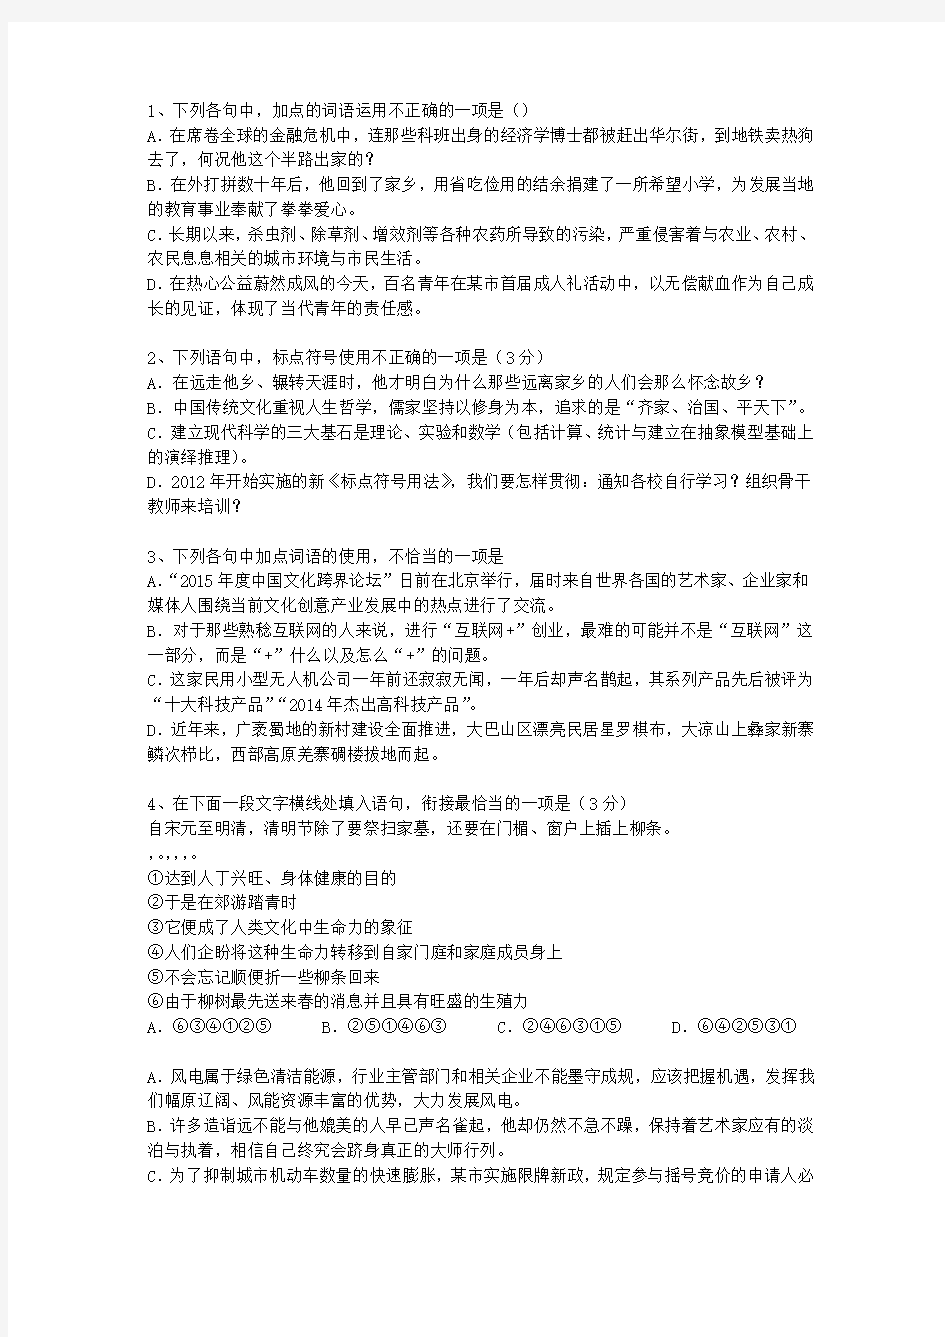 2011湖南省高考语文试卷汇总考试题库